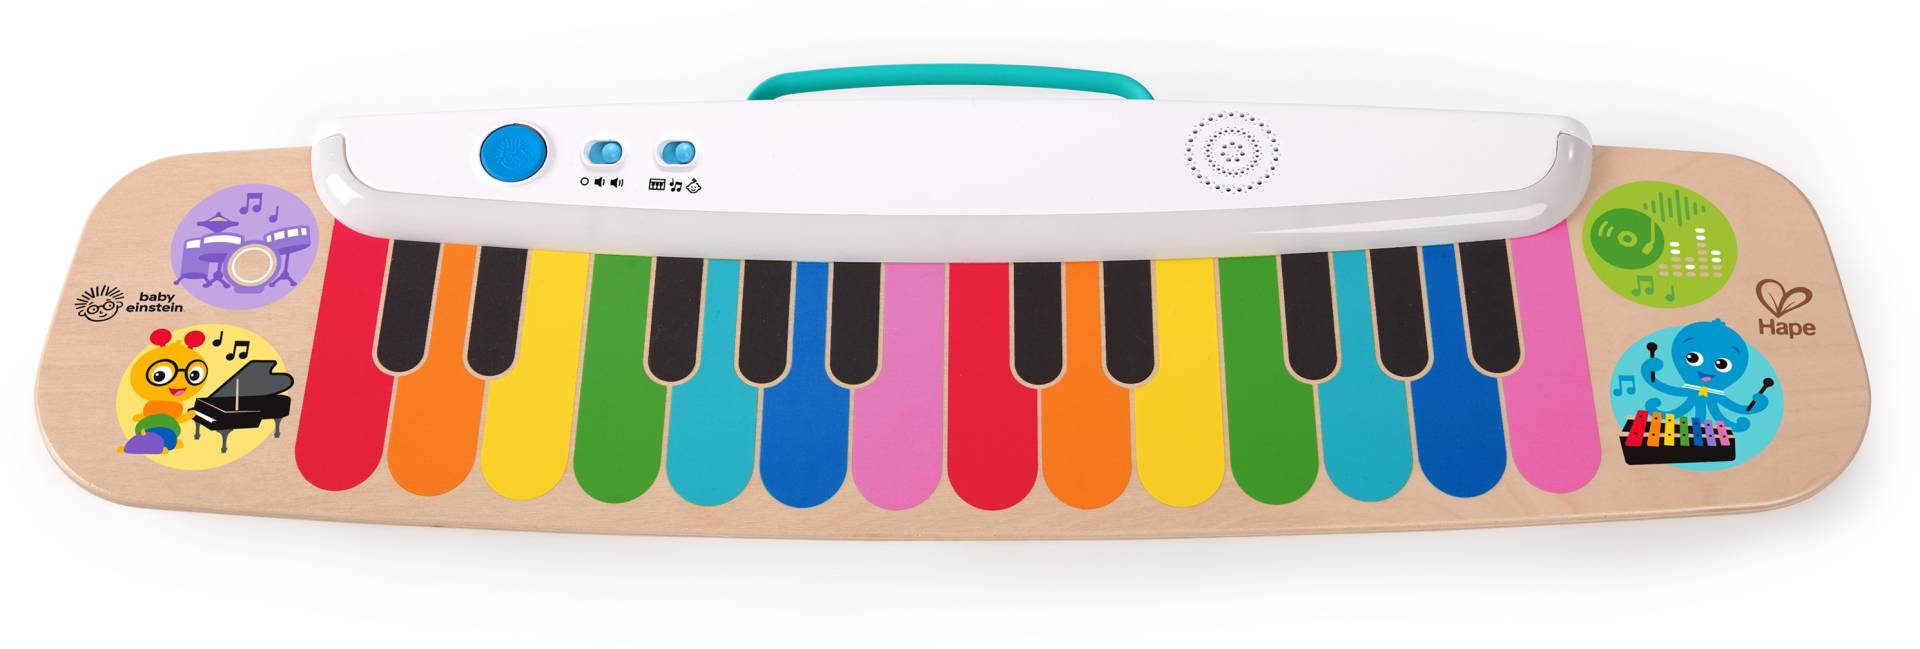 Baby Einstein Spielzeug-Musikinstrument »Magisches Touch Keyboard« von Baby Einstein